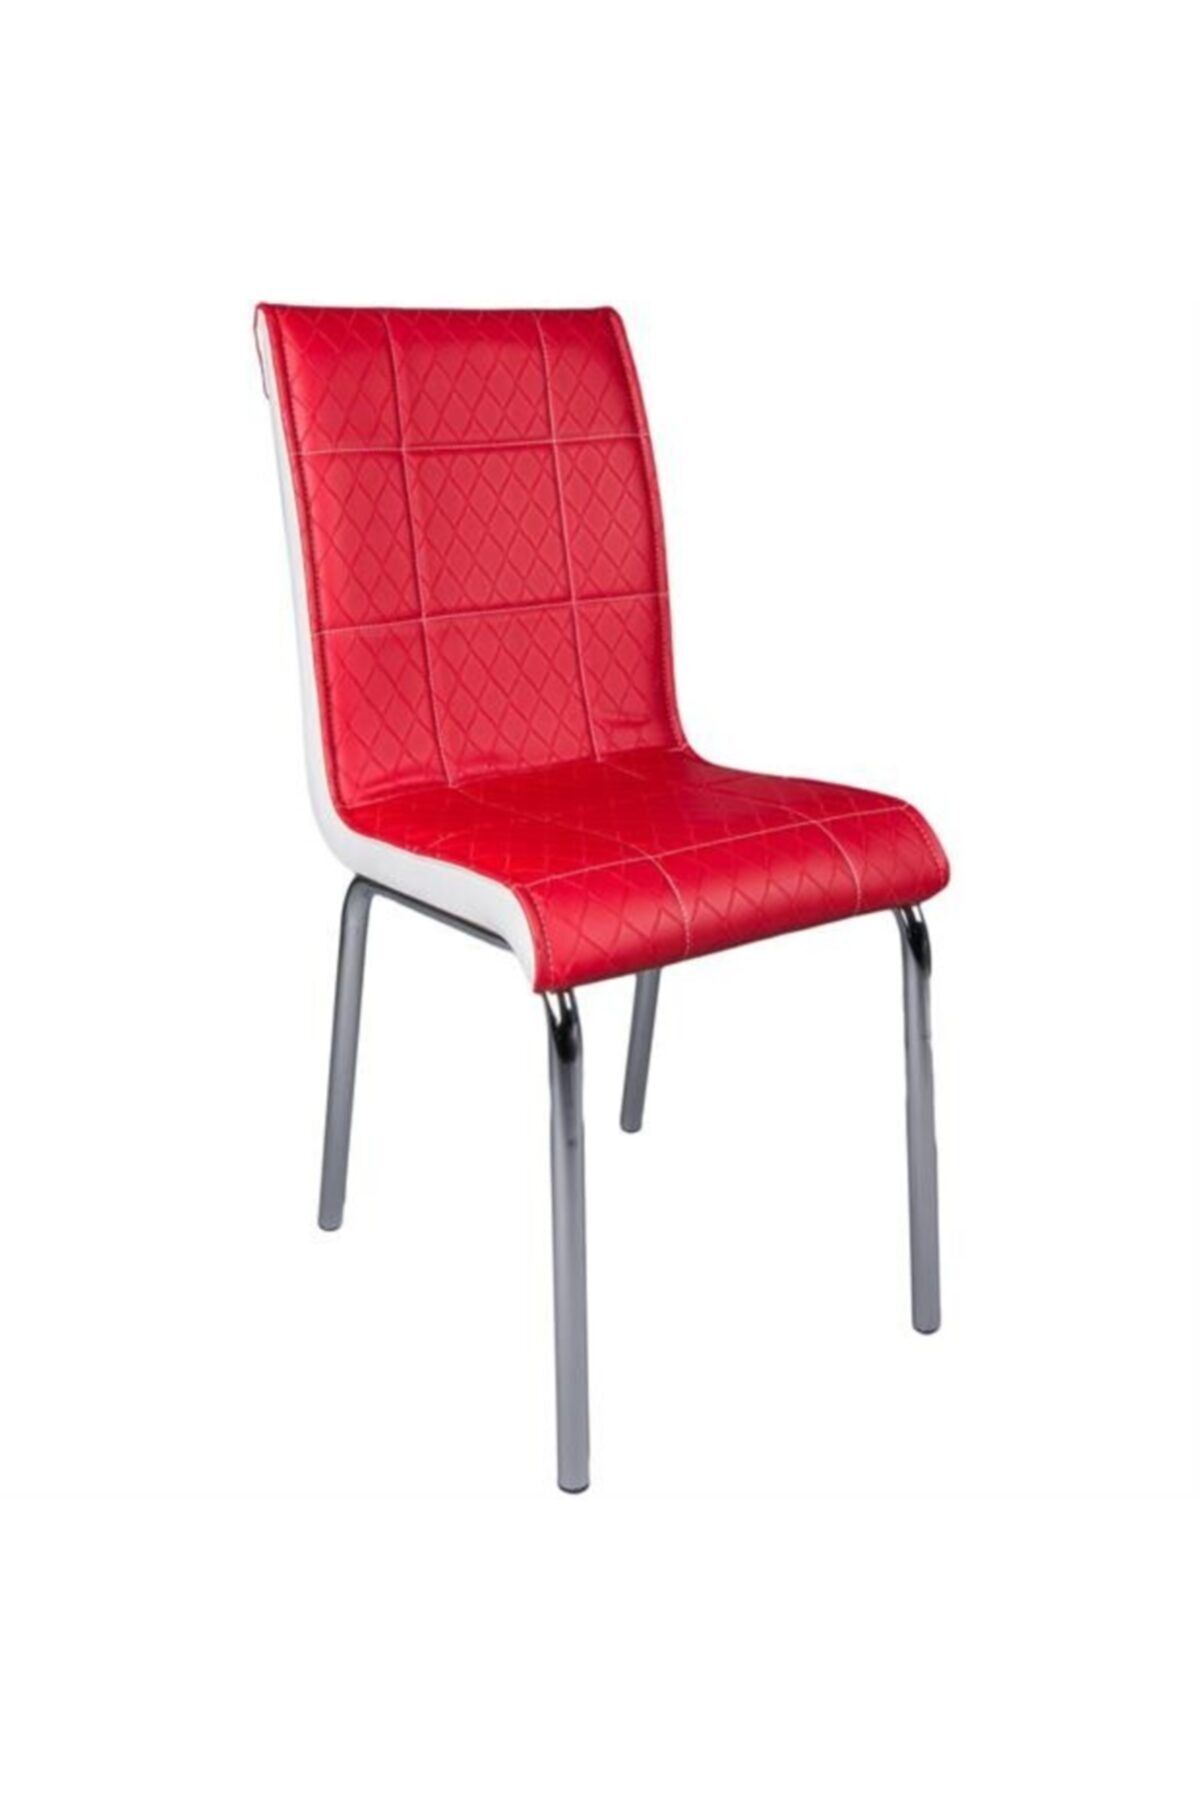 Evistro Paslanmaz Krom Ayaklı Balkon Ve Mutfak Sandalyesi 4 Adet Kırmızı